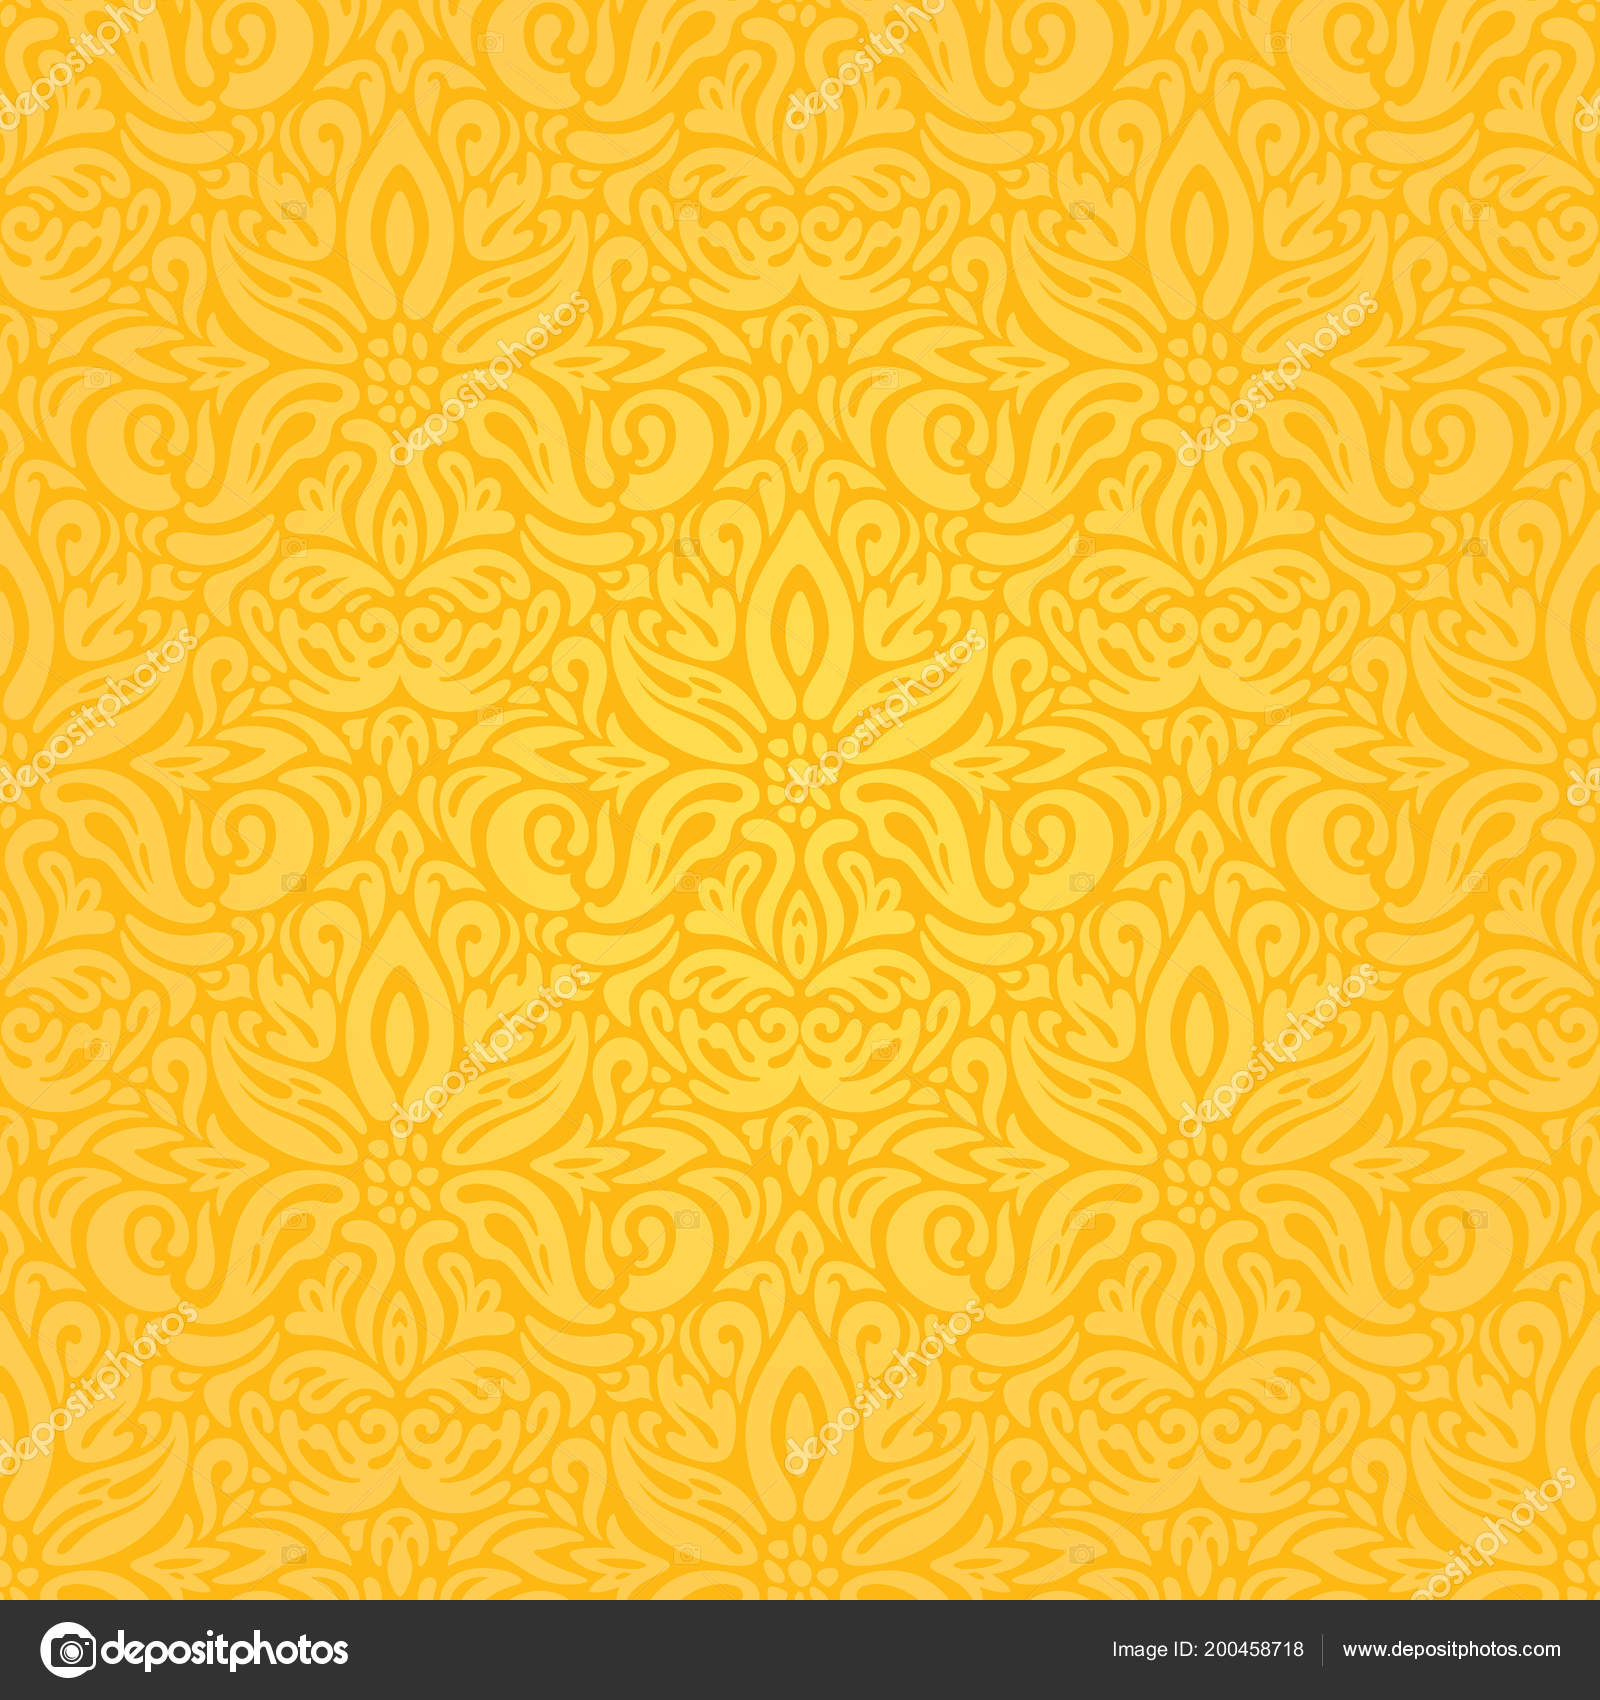 Nền hoa vàng đầy màu sắc (Colorful yellow floral wallpaper background pattern): Những hoa vàng rực rỡ và ngập tràn màu sắc trên nền trắng tinh khôi. Đây chắc chắn sẽ là thiết kế hoa vô cùng bắt mắt cho bức tường phòng khách hay phòng ngủ của bạn. Bạn sẽ không thể rời mắt khỏi hình ảnh này khi đã nhìn thấy được nó.